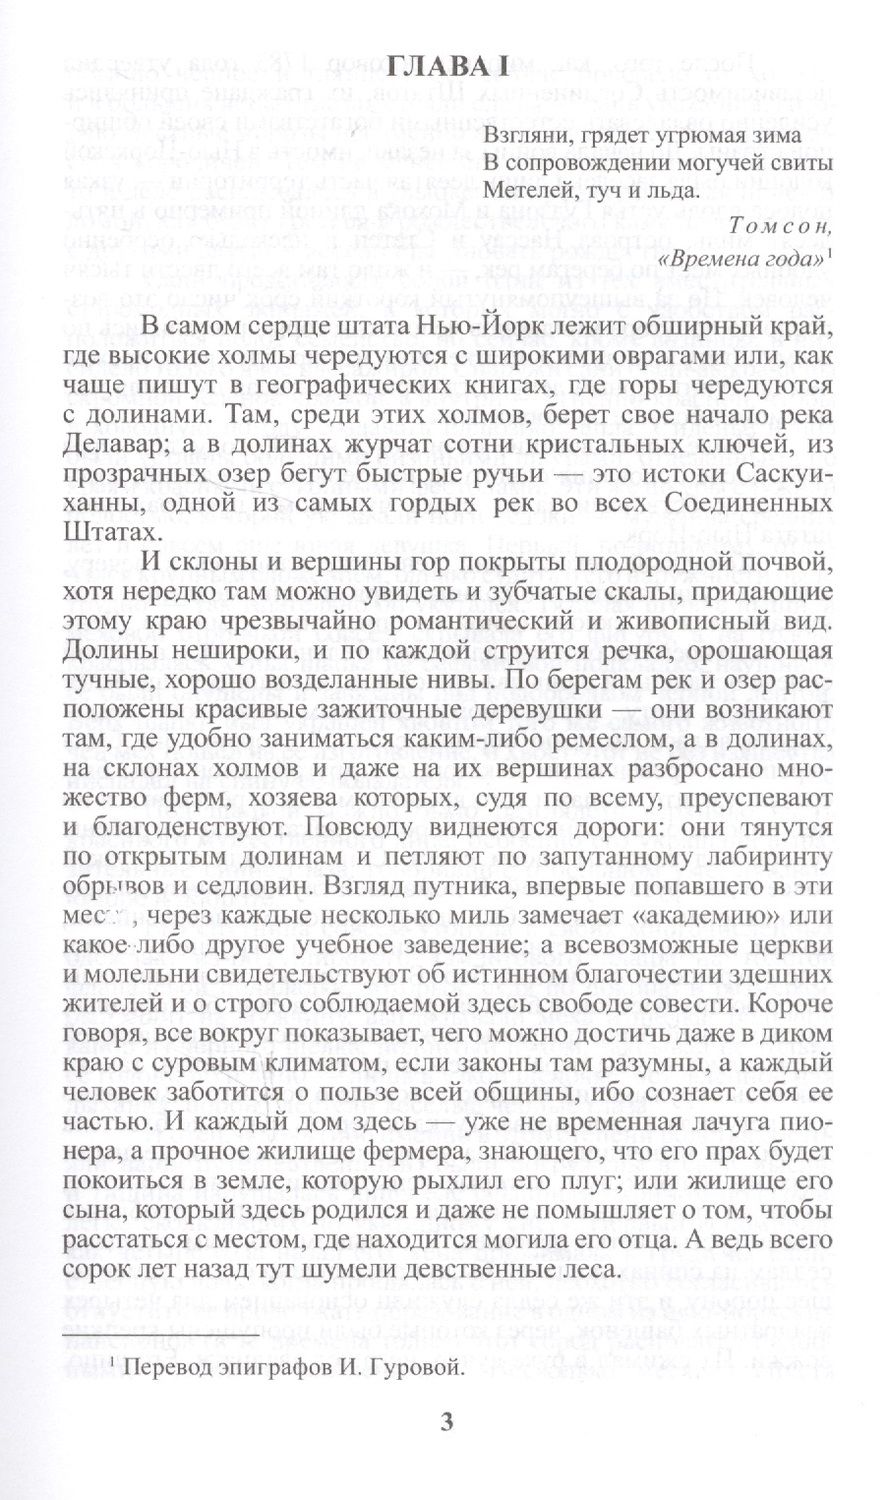 Обложка книги "Купер: Пионеры, или У истоков Саскуиханны: Роман."